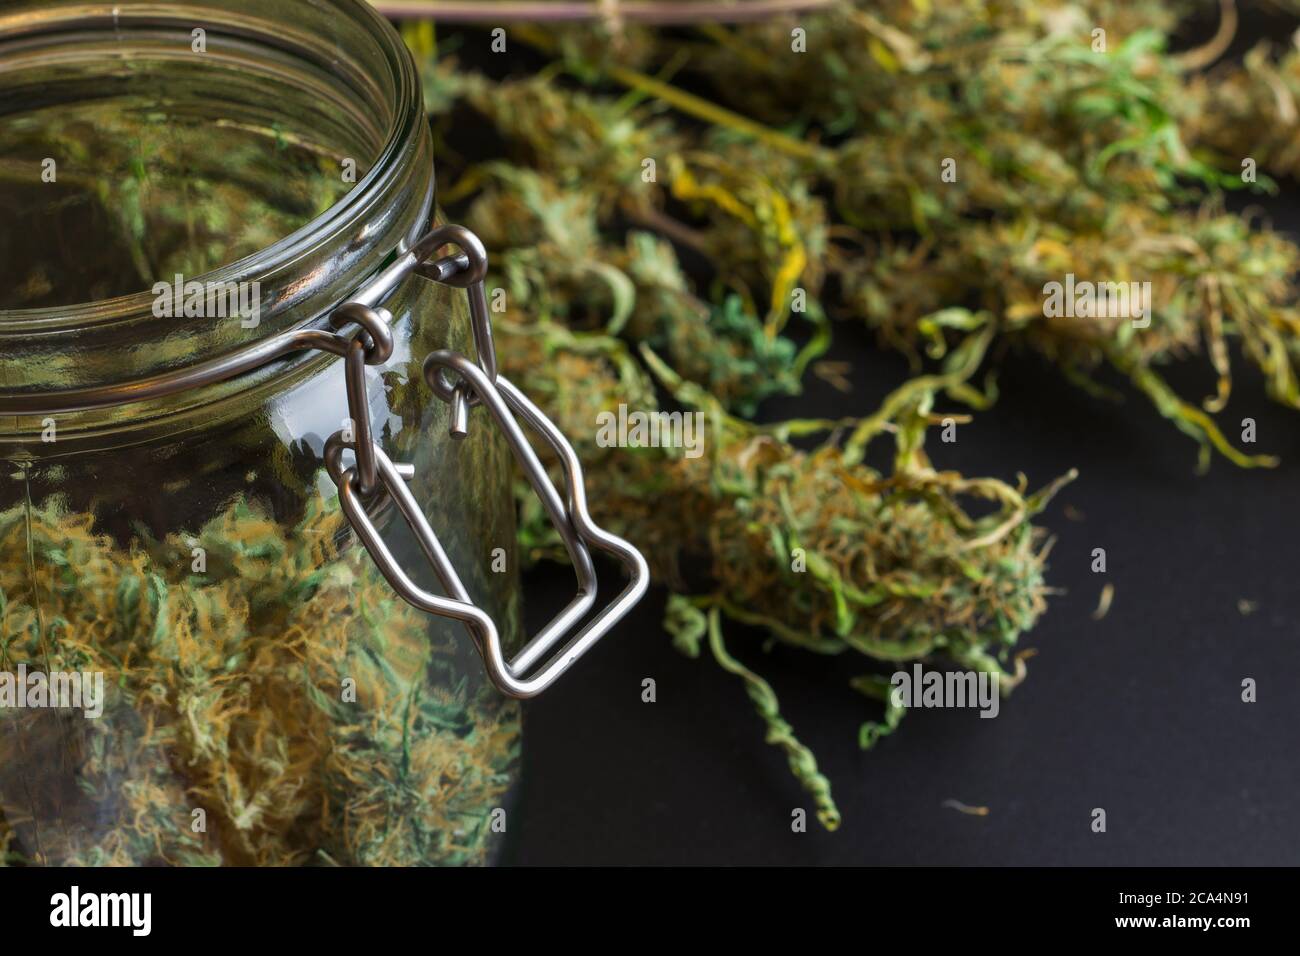 Indoor-Anbau von Cannabis. Marihuana Knospen im Glas. Unkrauternte, medizinischer Drogenkonsum Stockfoto